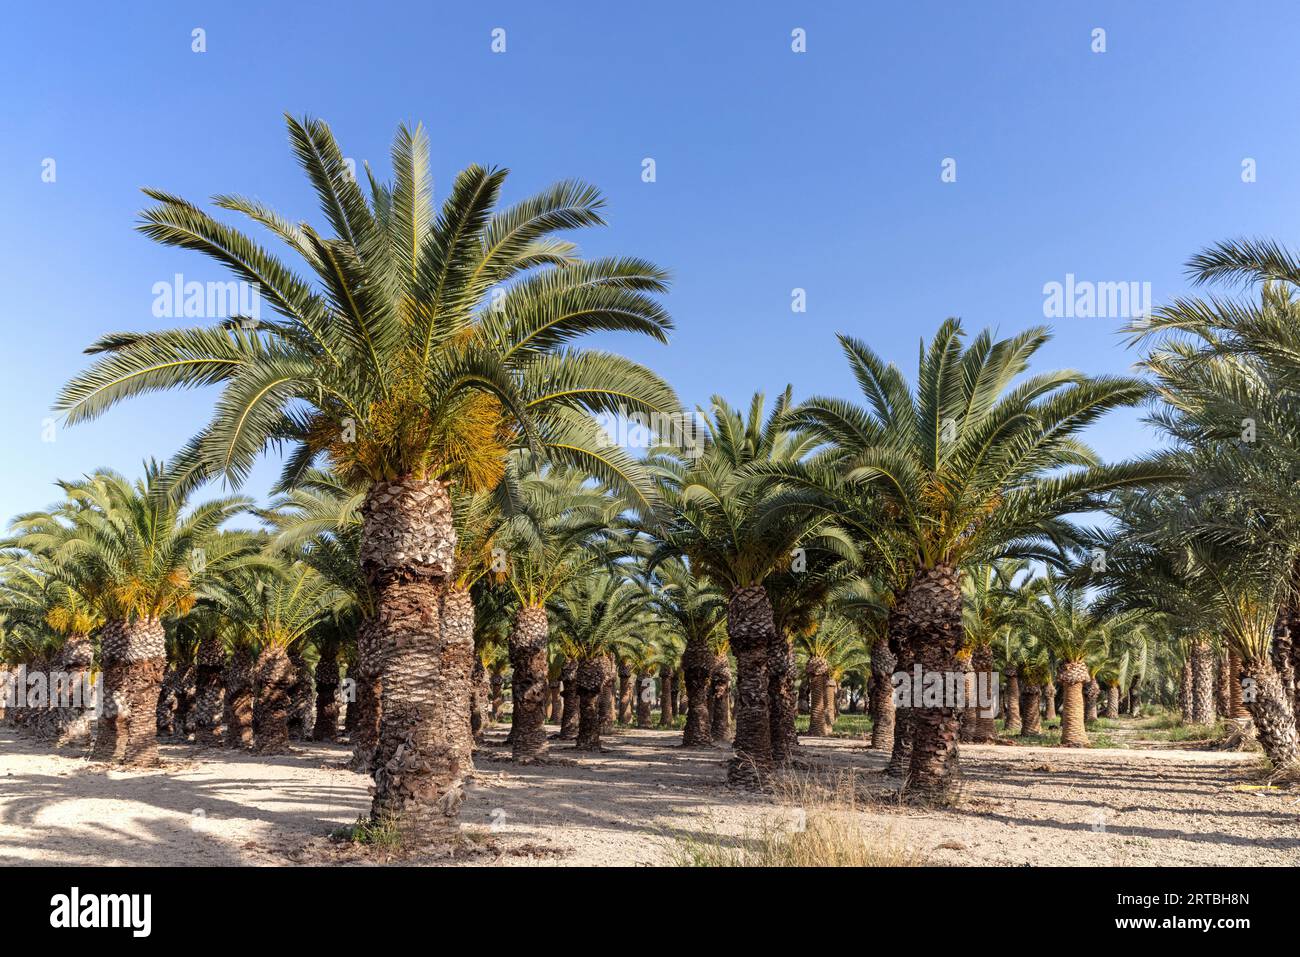 Palmera datilera (Phoenix dactylifera), bosque con palmeras datileras antiguas, España, Valencia, Crevillent Foto de stock